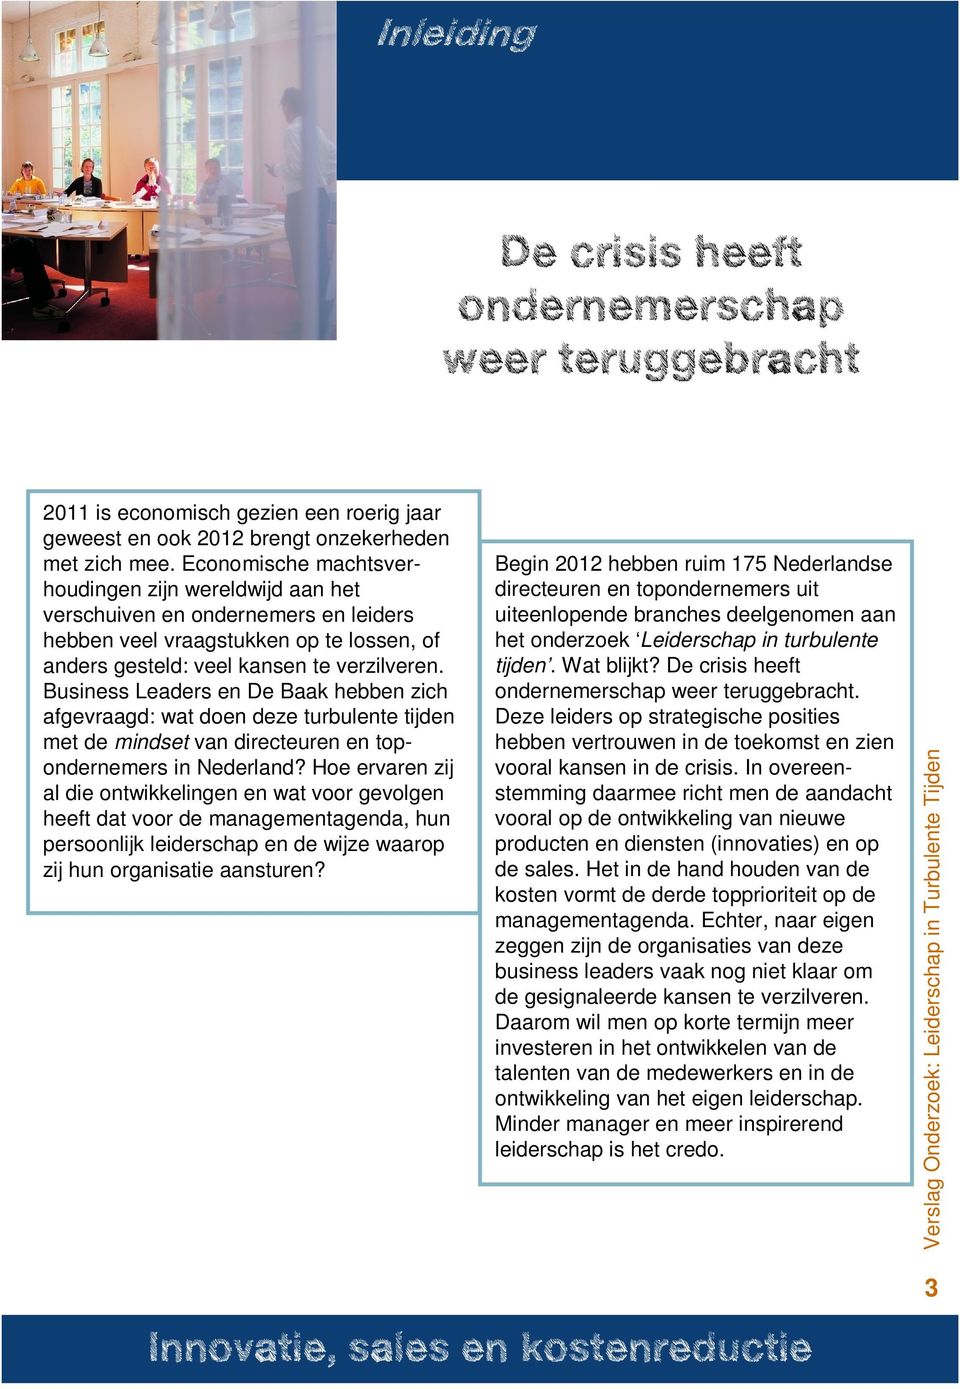 Business Leaders en De Baak hebben zich afgevraagd: wat doen deze turbulente tijden met de mindset van directeuren en topondernemers in Nederland?